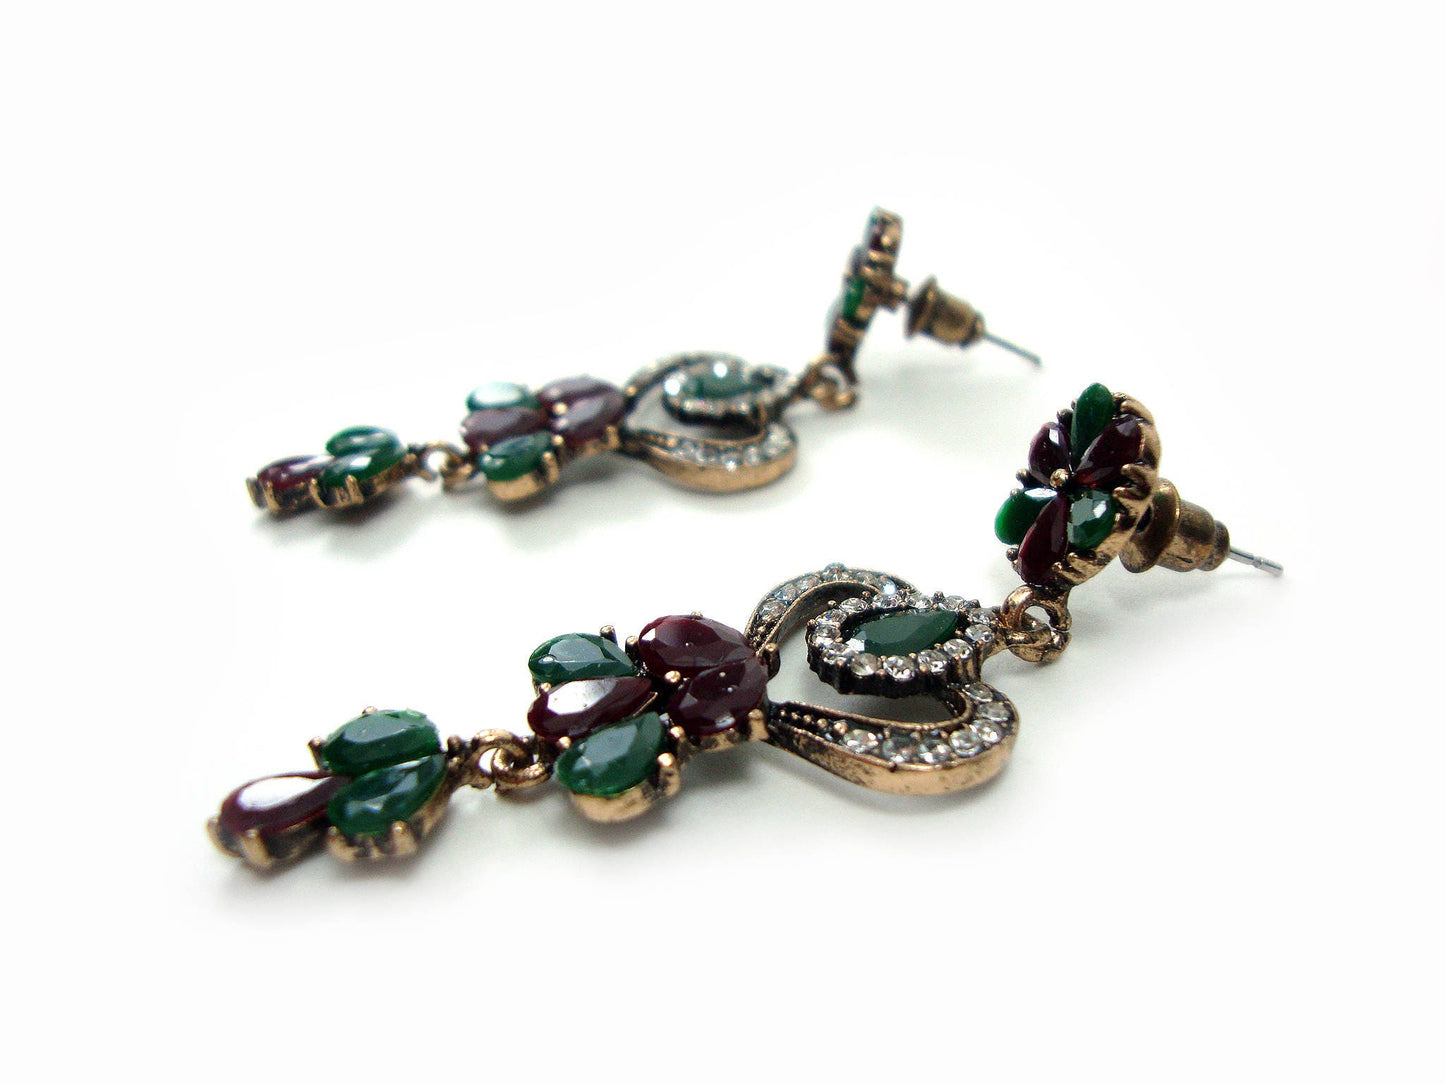 Griechischer Schmuck, Antik-Stil, mehrfarbige Kristallsteine, lange Ohrringe, ethnische antike Ohrringe, byzantinische traditionelle Juwelen